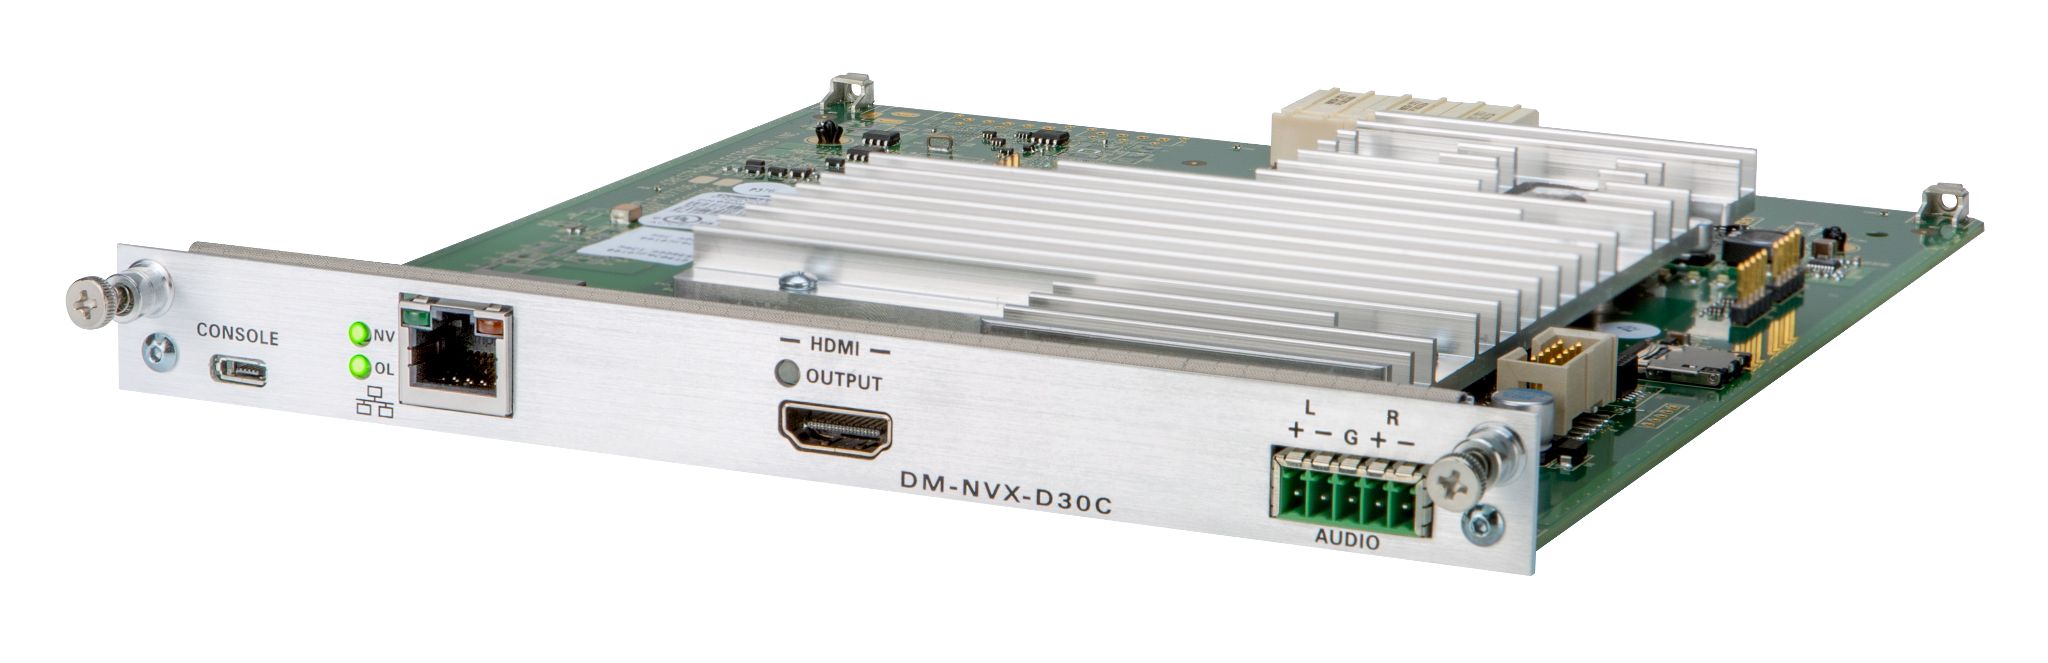 DM-NVX-D30C